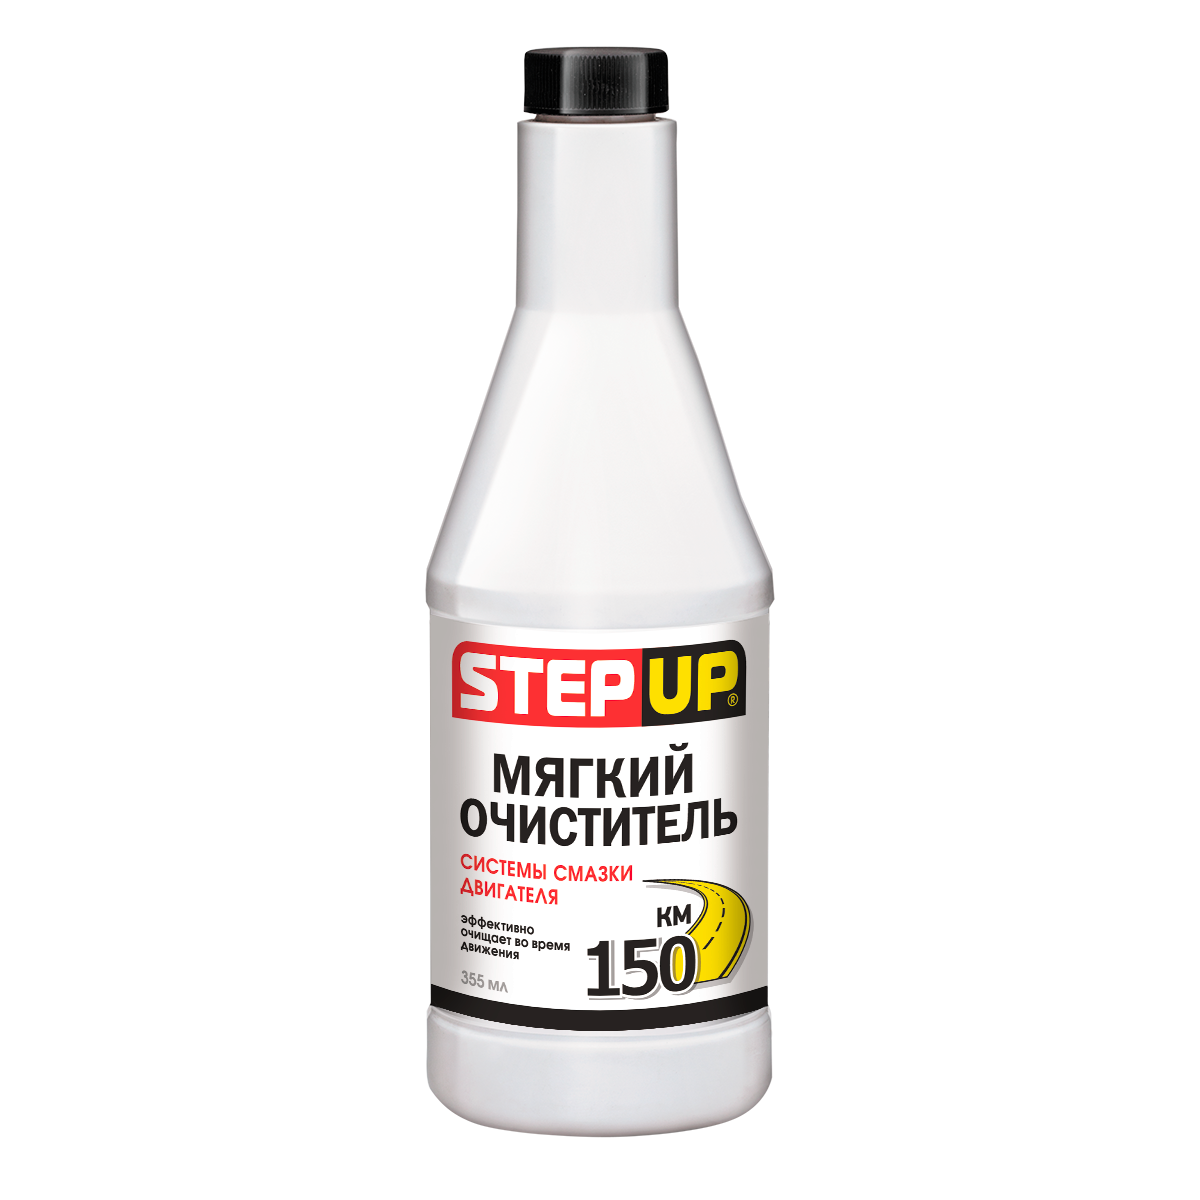 StepUp Мягкий очиститель двигателя SP2210 / 335 мл.